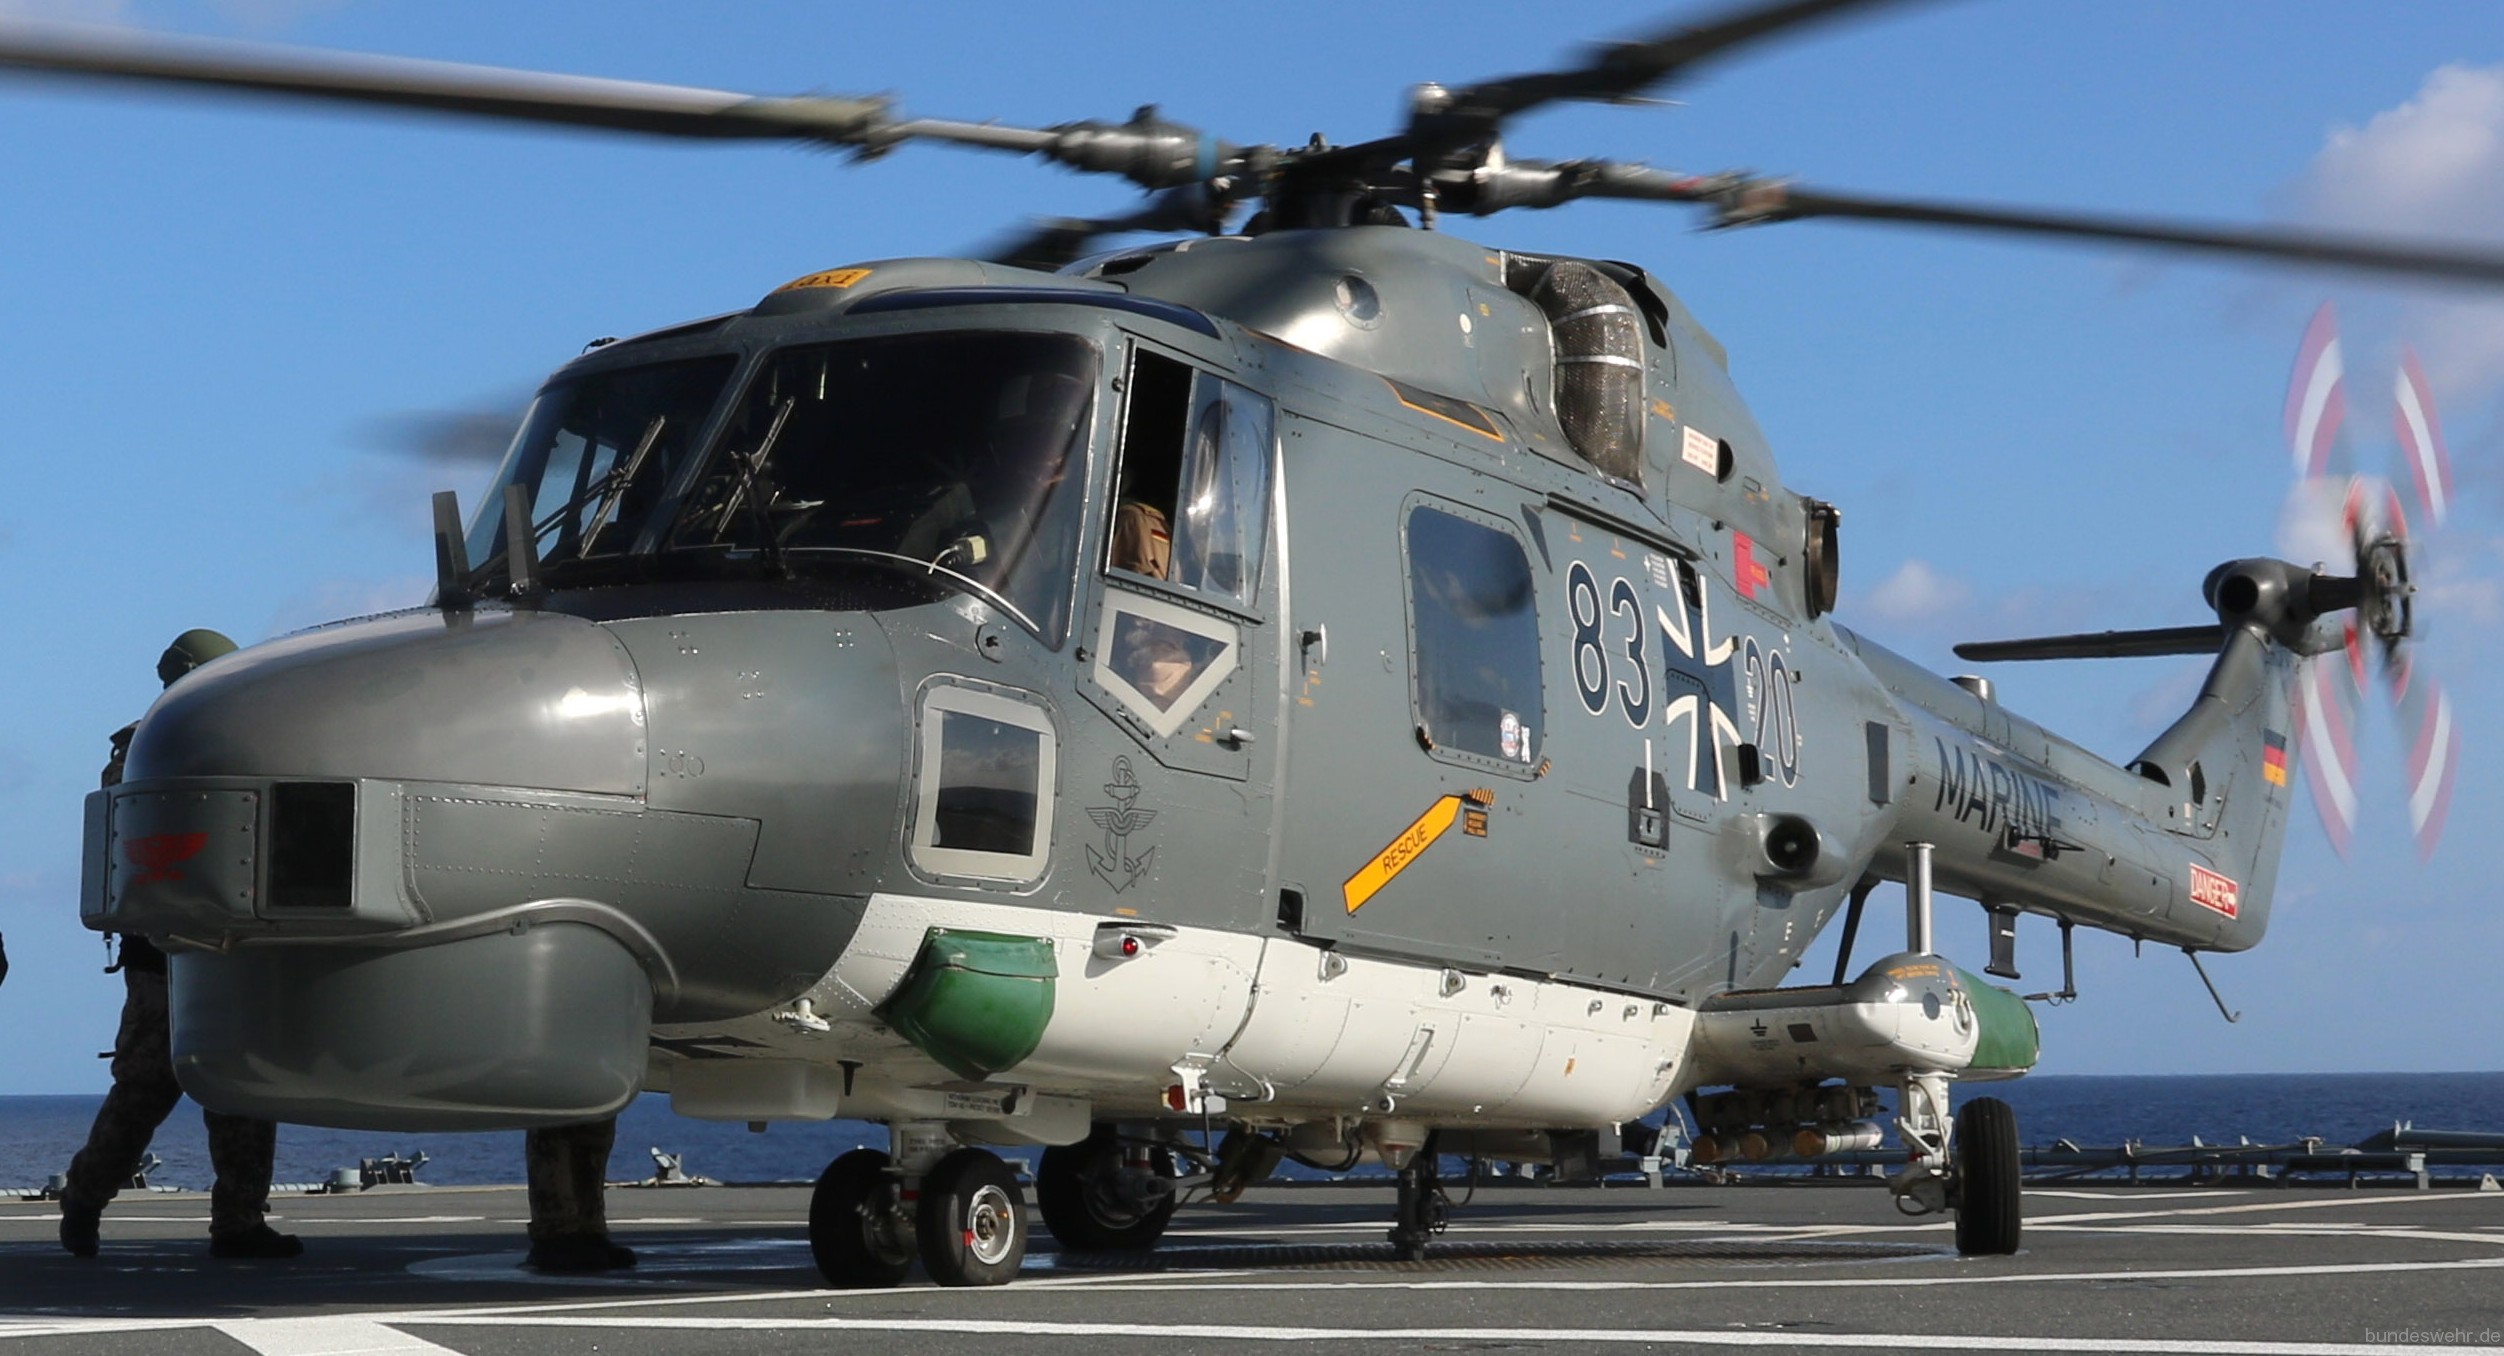 sea lynx mk.88a westland naval helicopter german navy deutsche marine 04